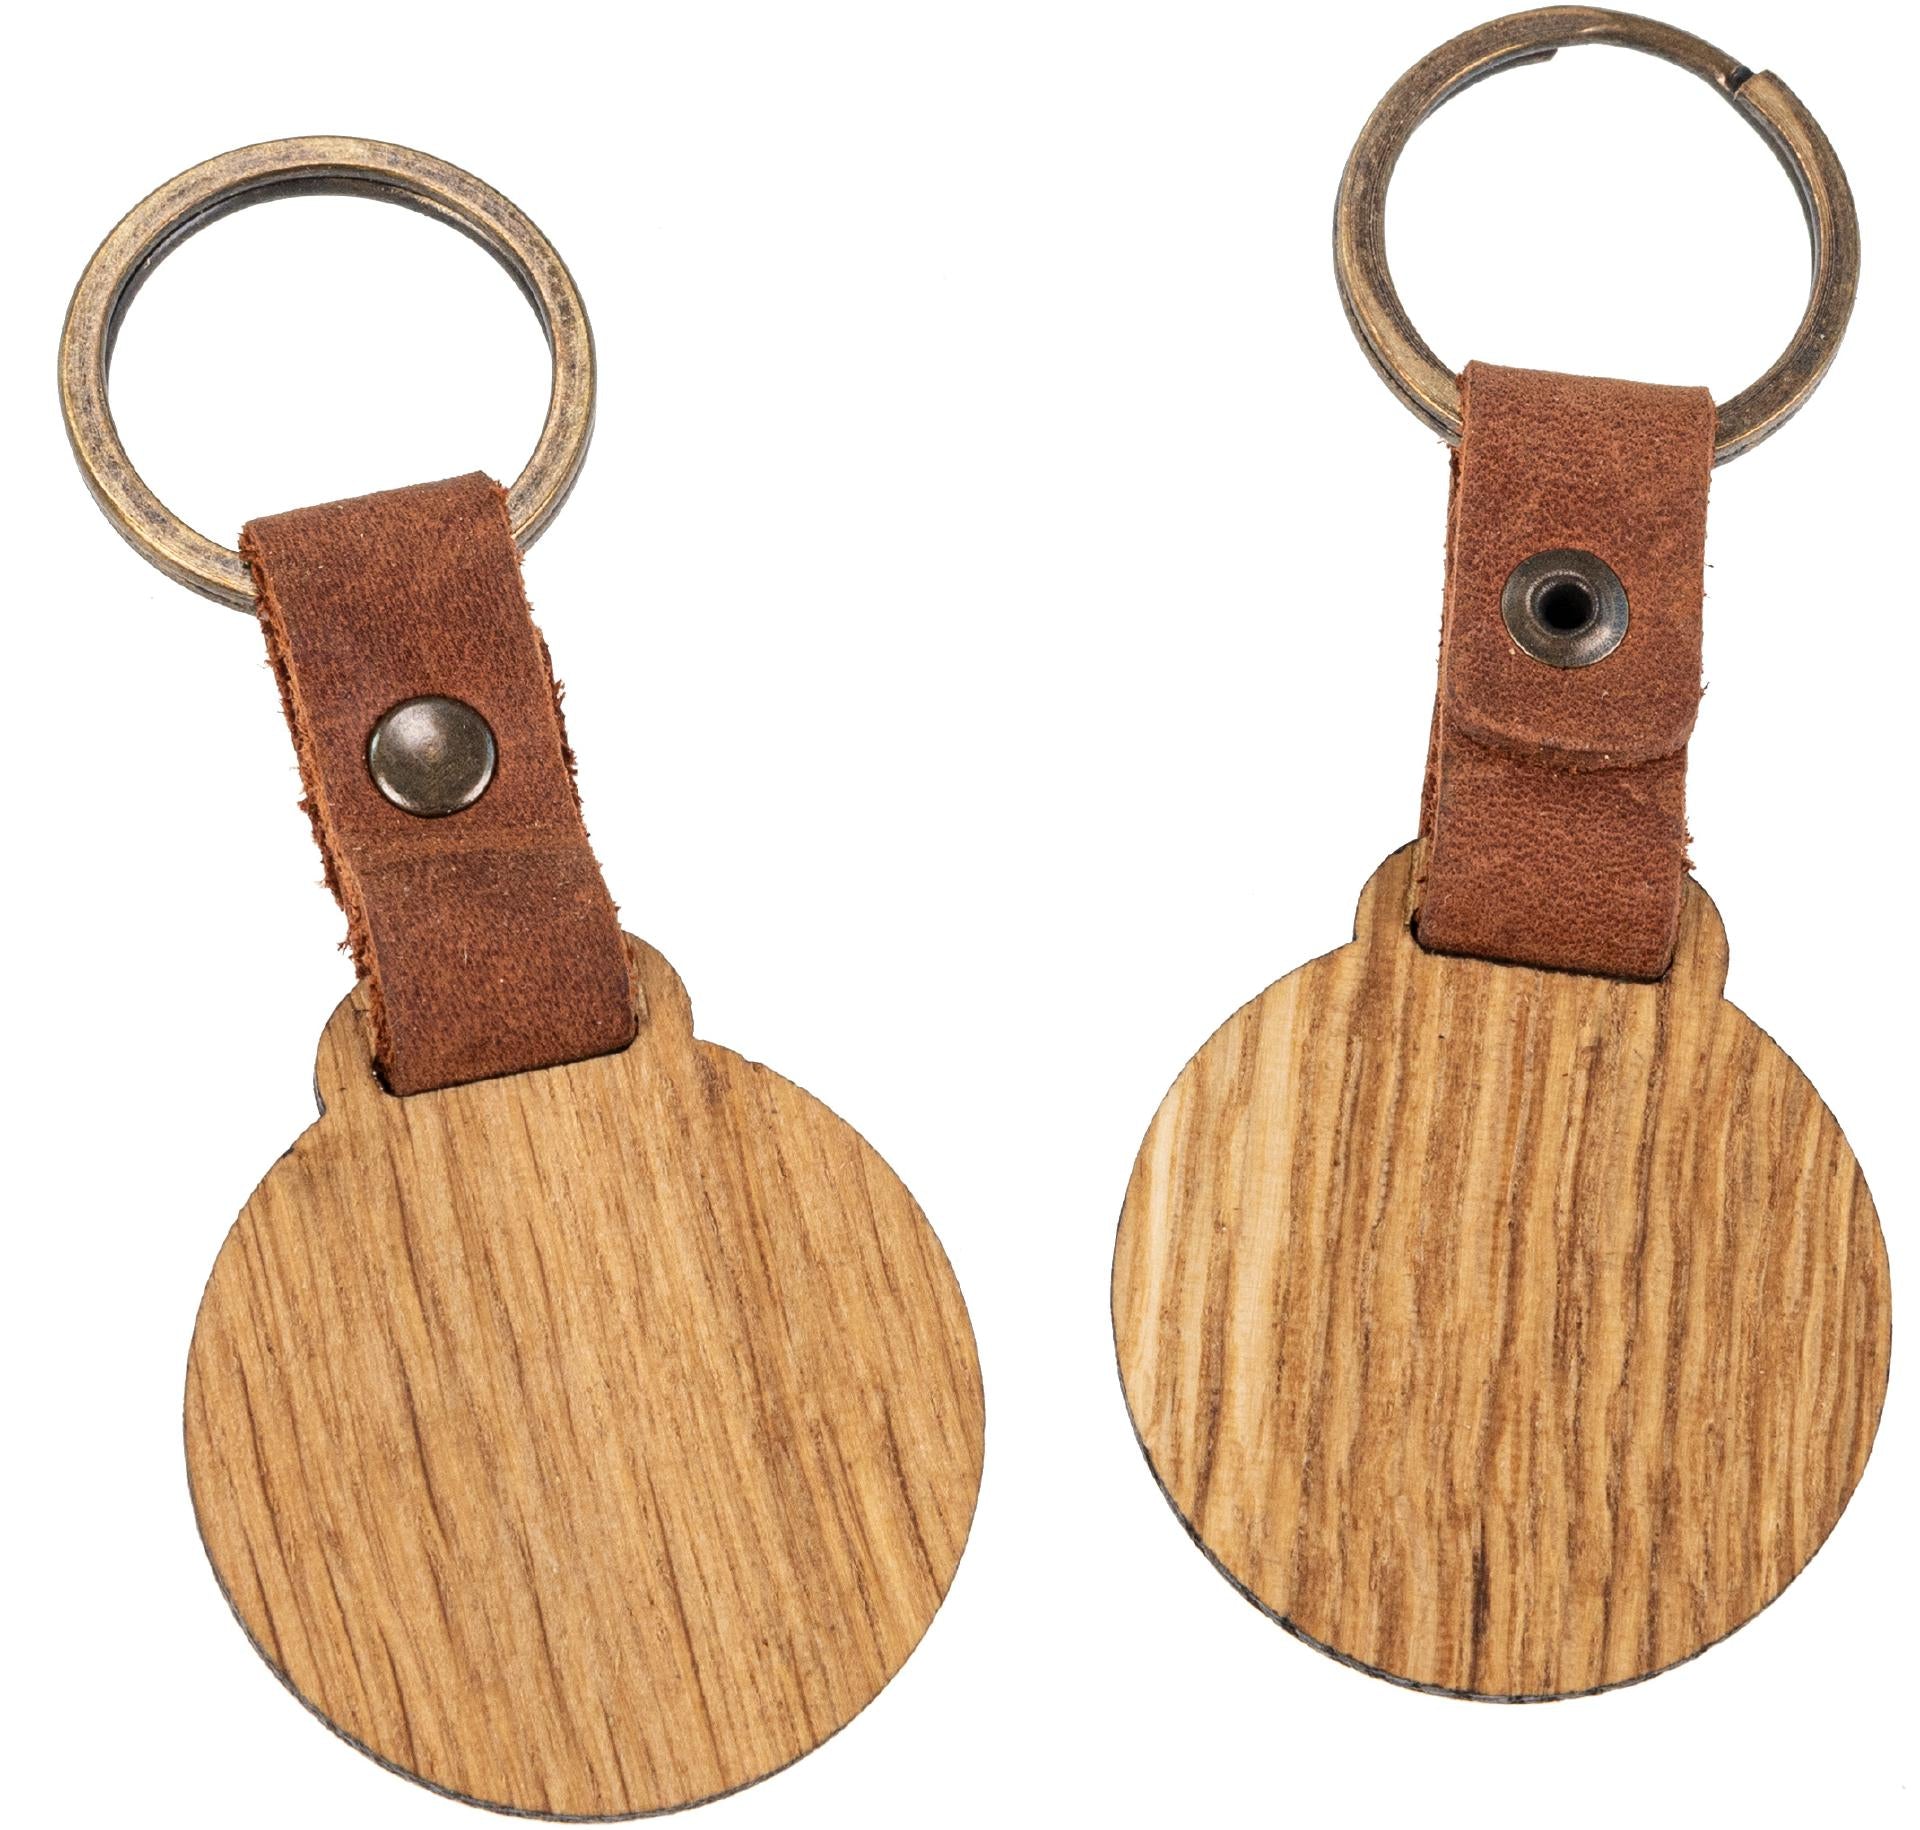 Holz-Schlüsselanhänger aus geölter Eiche rund mit hellbraunem Lederband